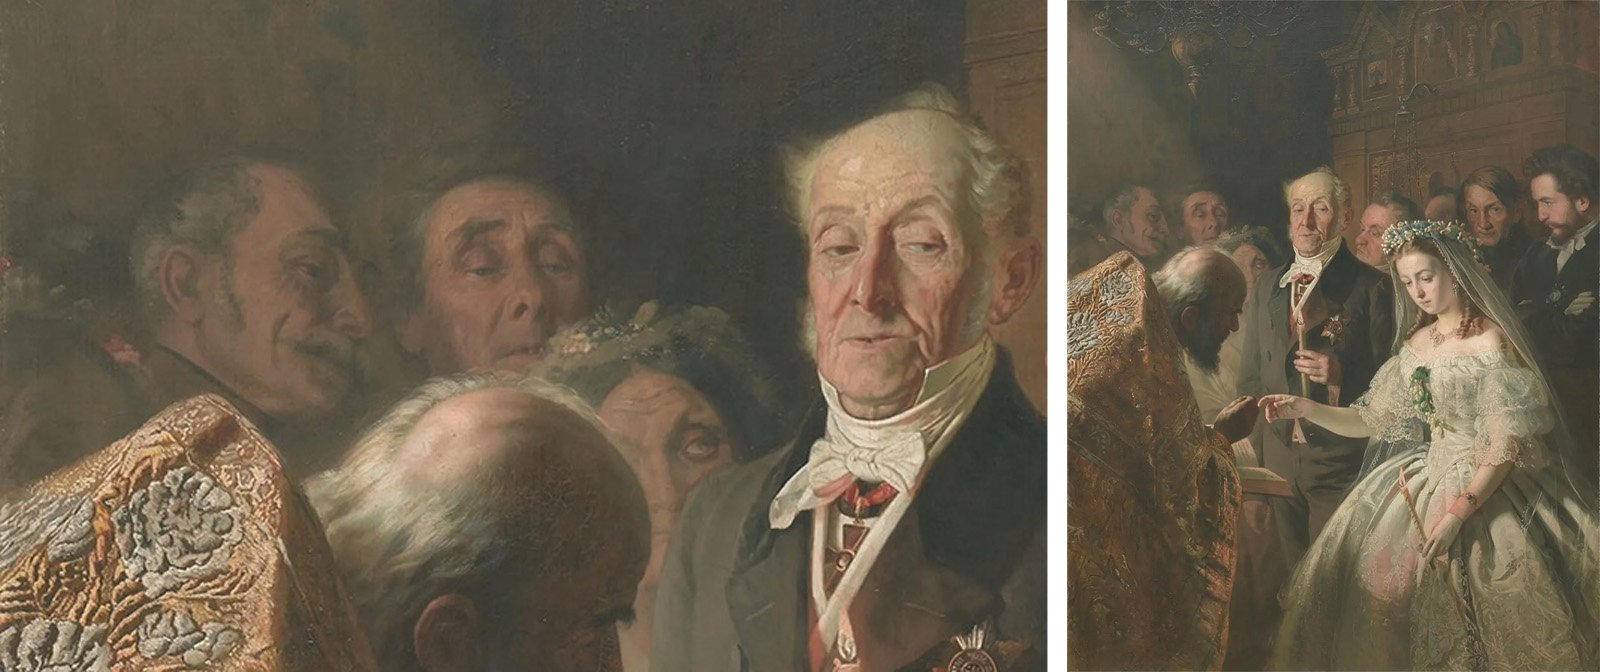 Кто была невеста на картине Пукирёва "Неравный брак" и как сложилась её судьба? Почему художник нарисовал 3 невесты?